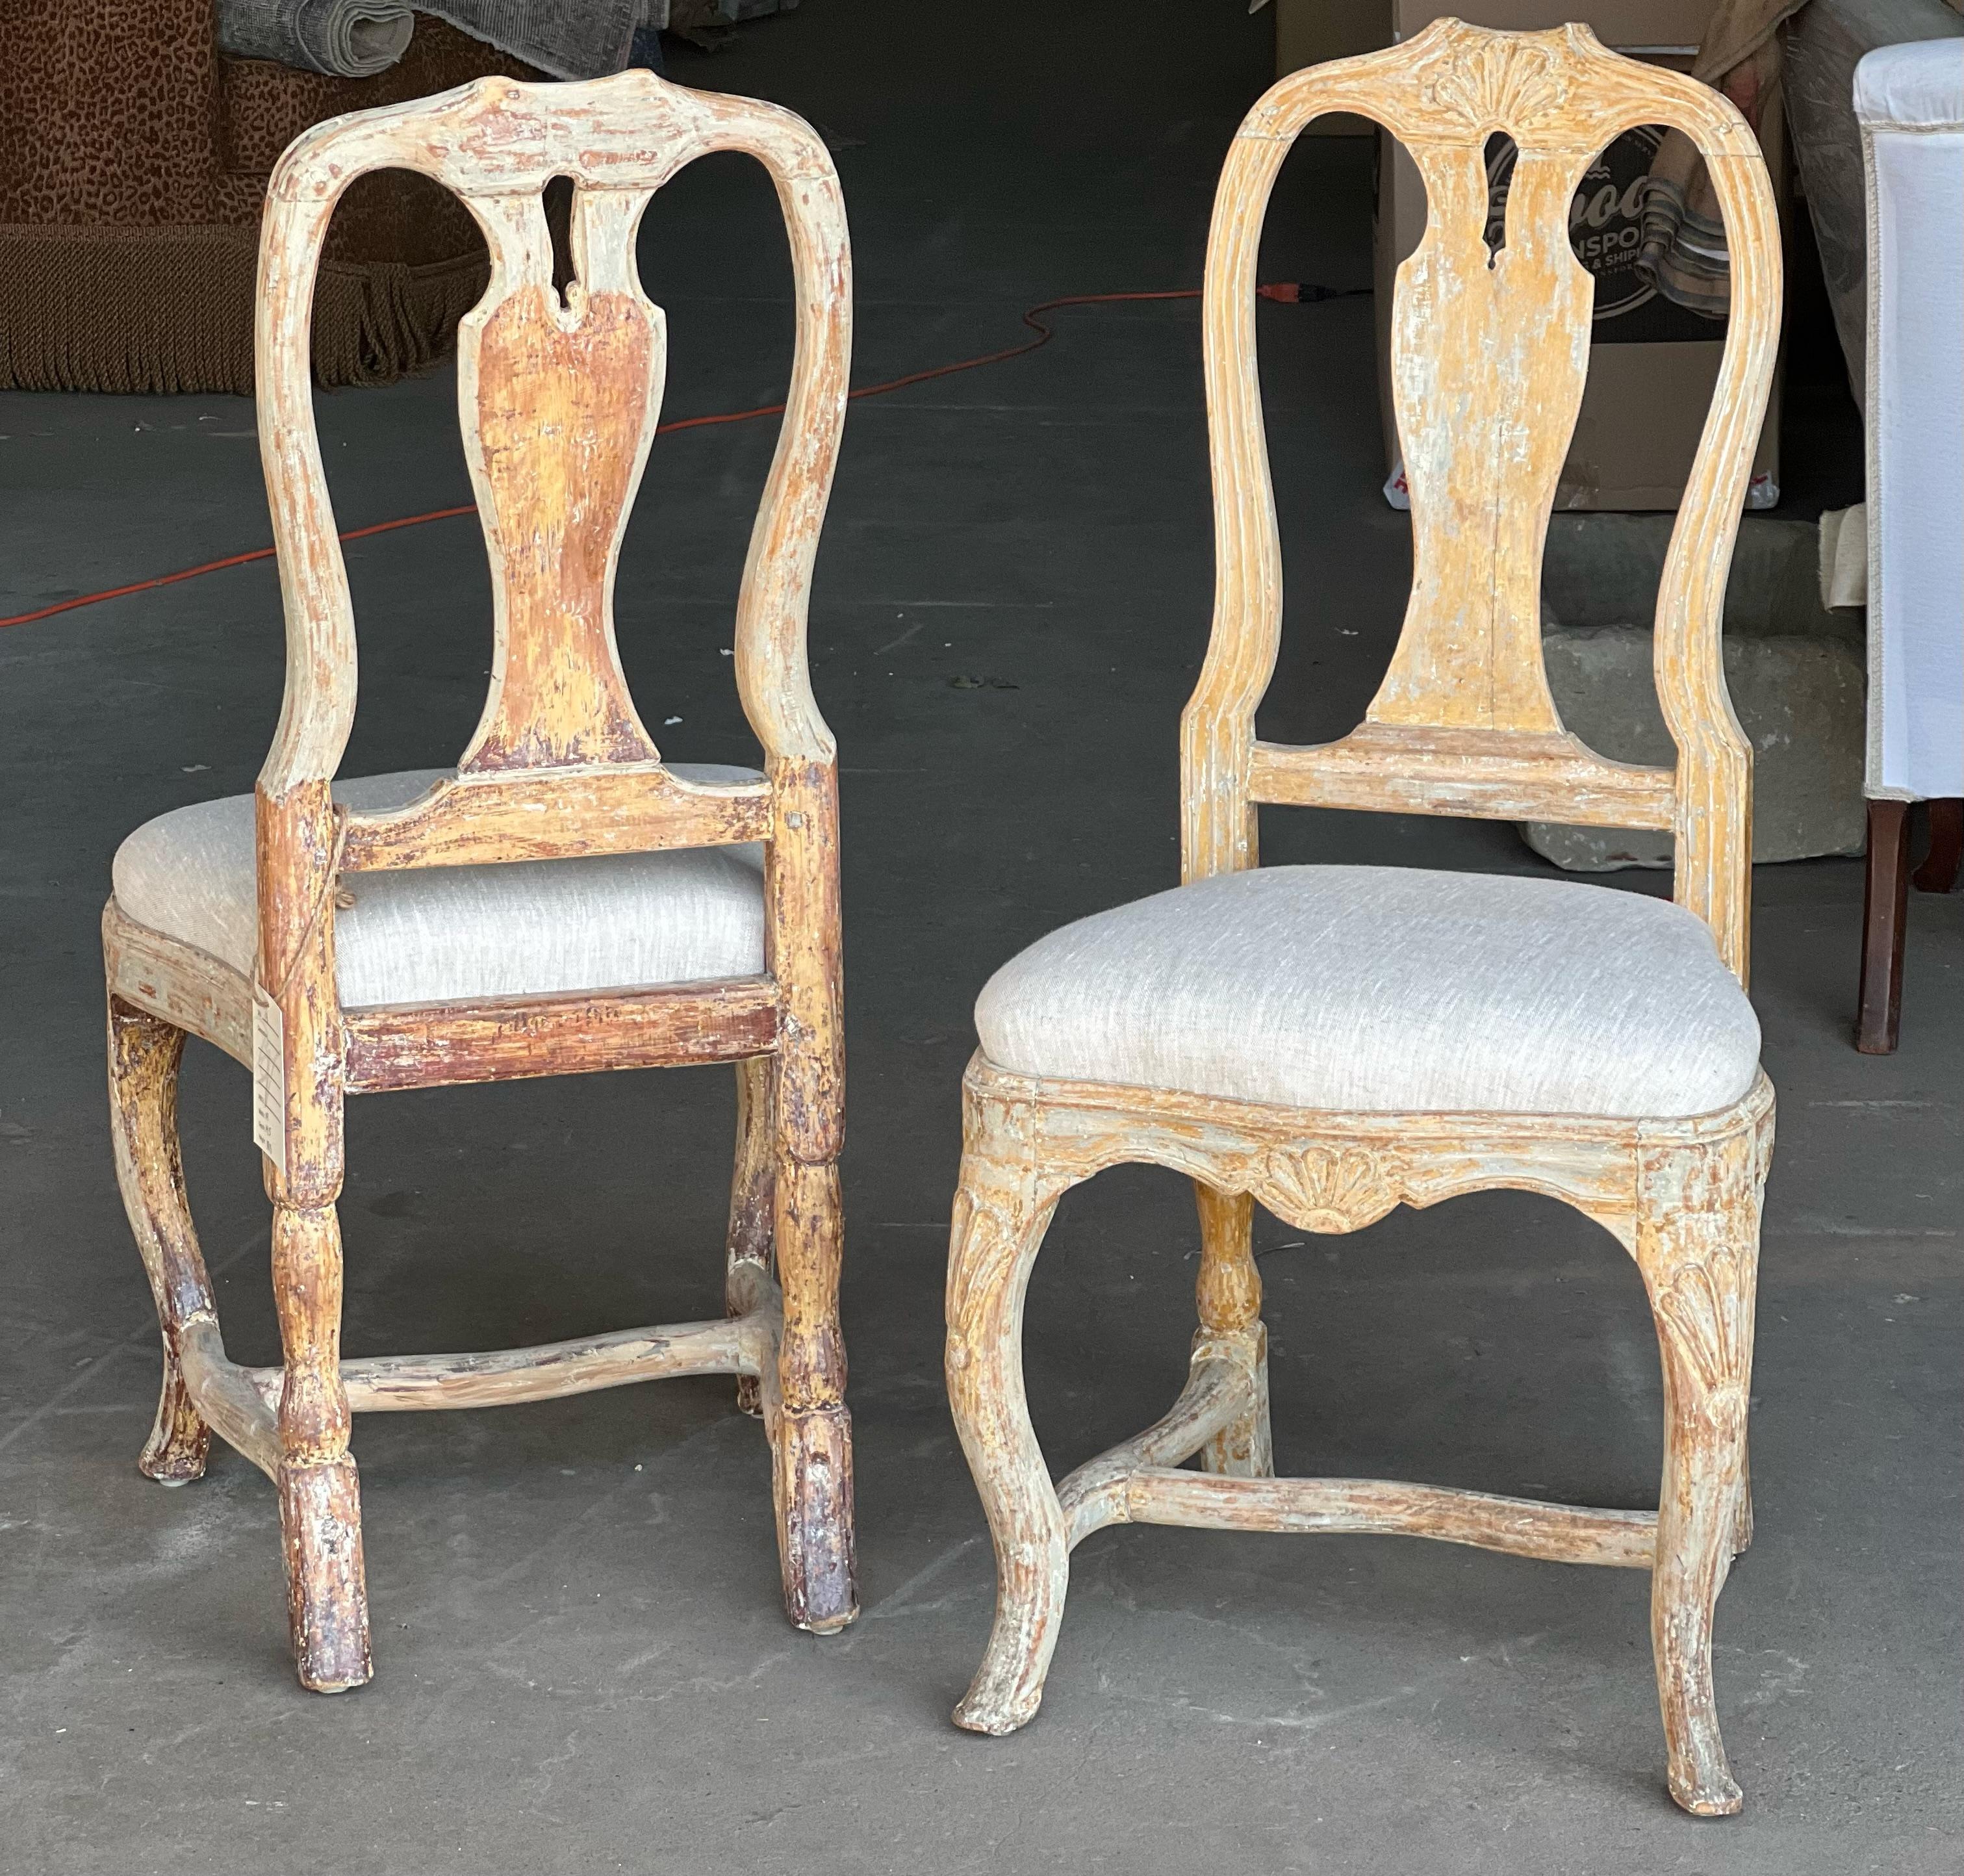 Ein atemberaubendes Paar schwedischer Rokoko-Stühle, die stabil sind und schöne Proportionen mit handgeschnitzten Details haben. Dieses Paar wurde bis auf die Originalfarbe trocken geschabt und mit neuen Leinenbezügen versehen. Mitte bis Ende des